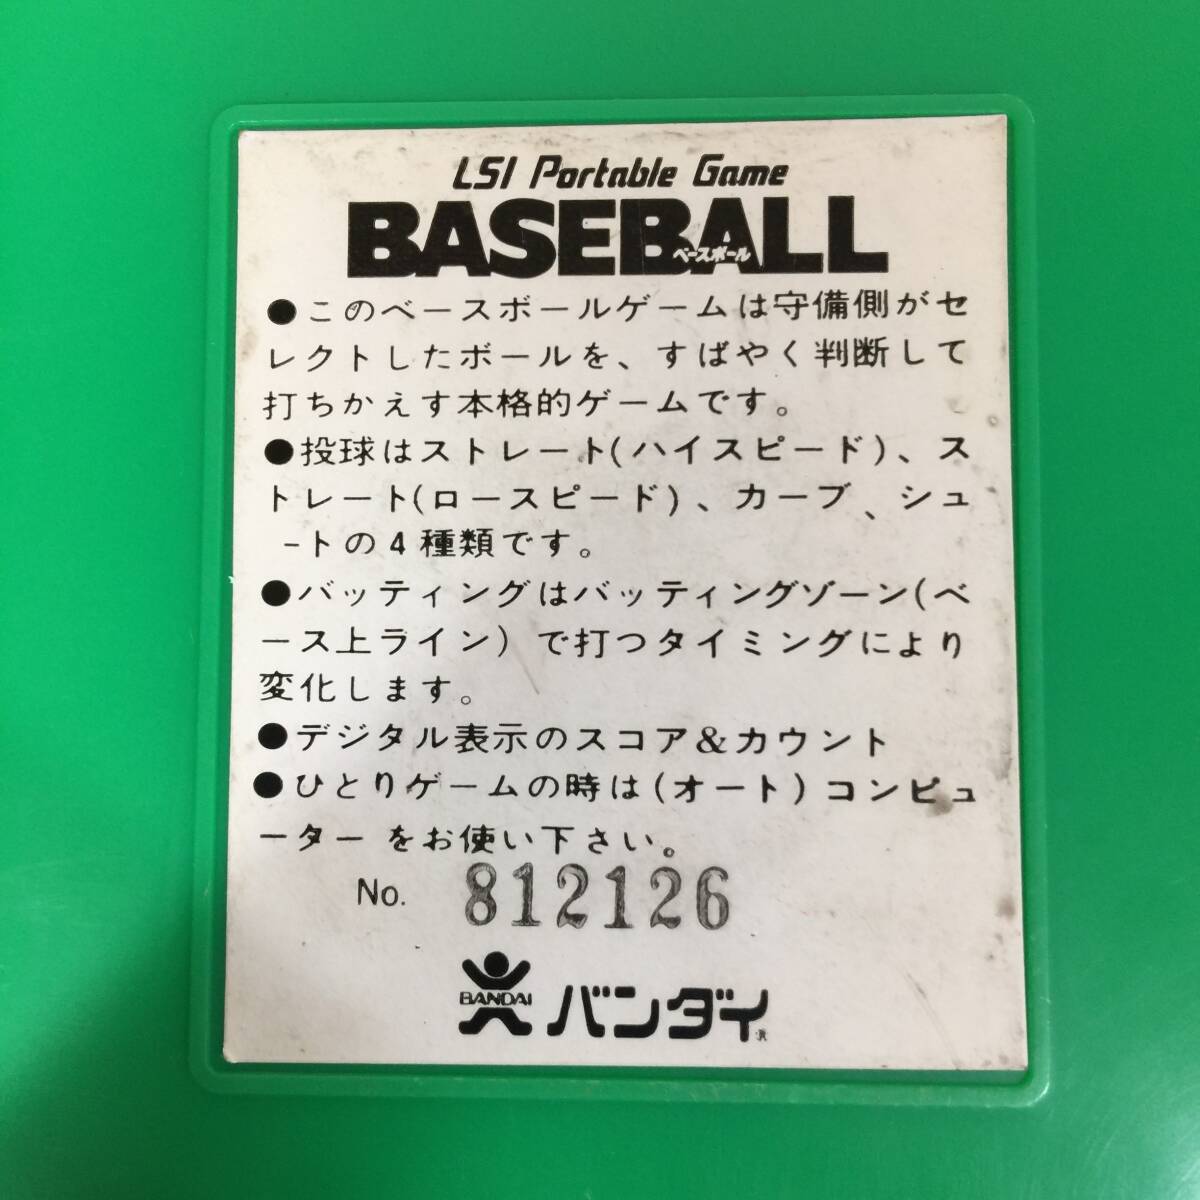 BANDAI Bandai LSI игра BASEBALL Baseball корпус только / retro игра 